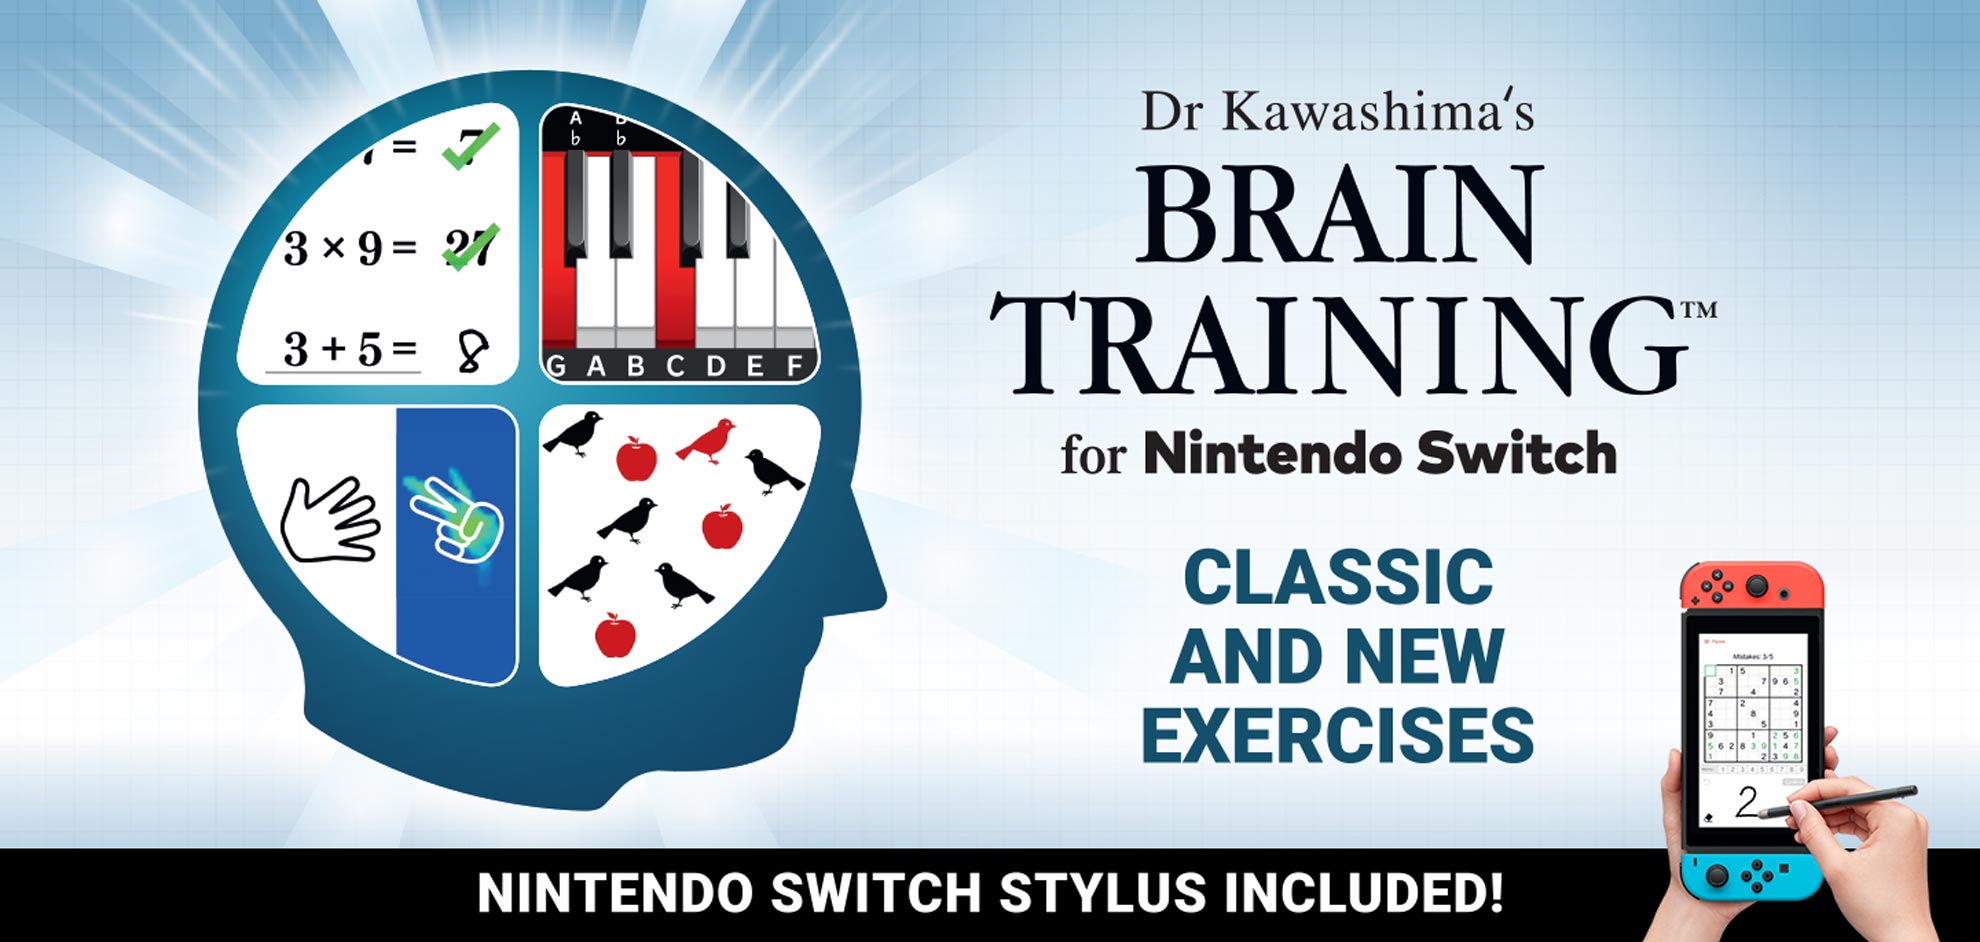 Dr Kawashima’s Brain Training